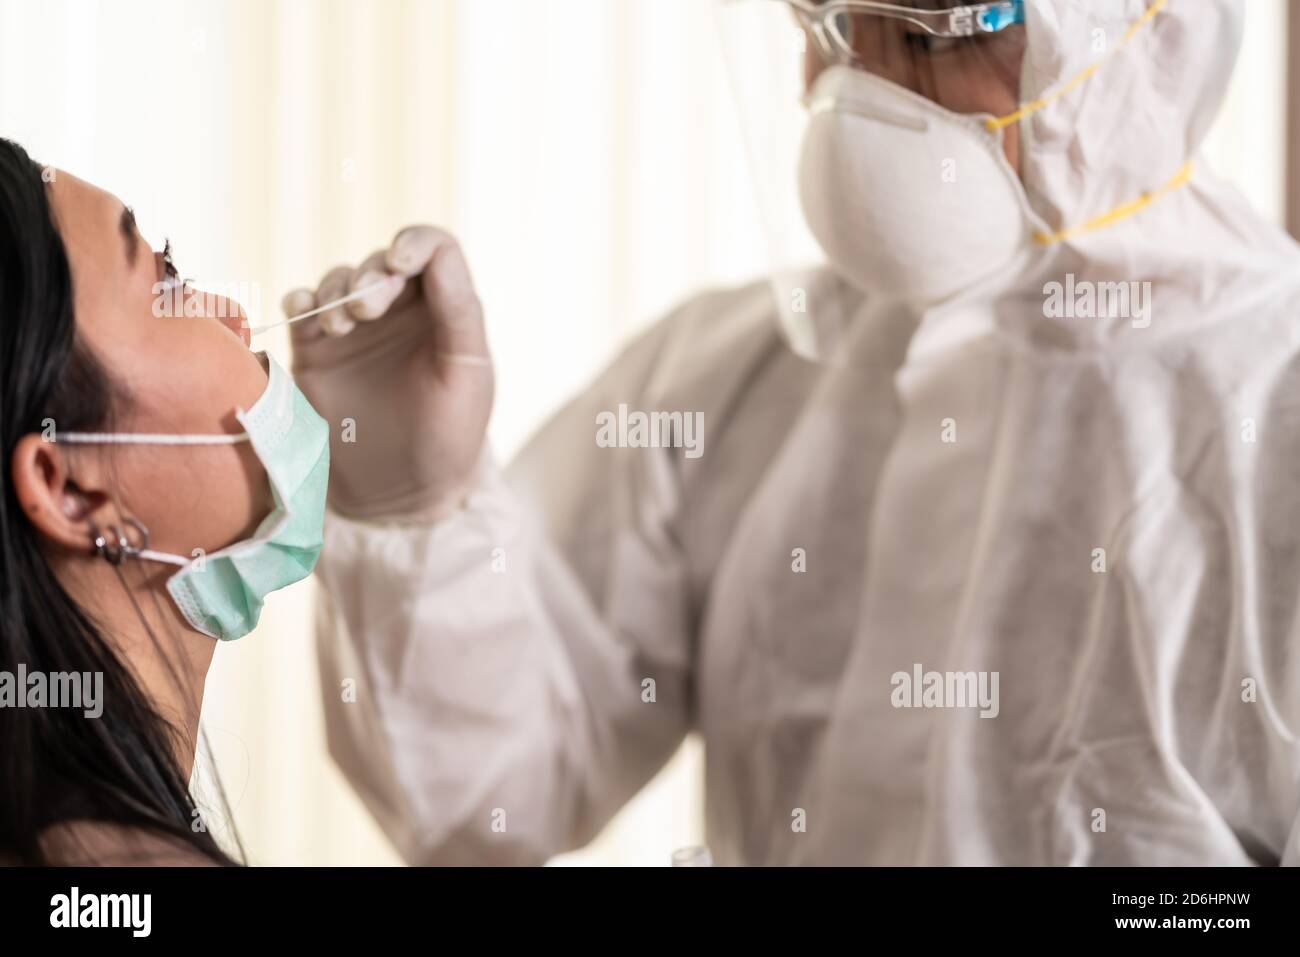 Medizinisches Personal mit PPE-Anzug Test Coronavirus covid-19 an asiatische Frau durch Nasenabstrich im Hosputal. COVID-19 Prüfung Gesundheitskonzept. Stockfoto